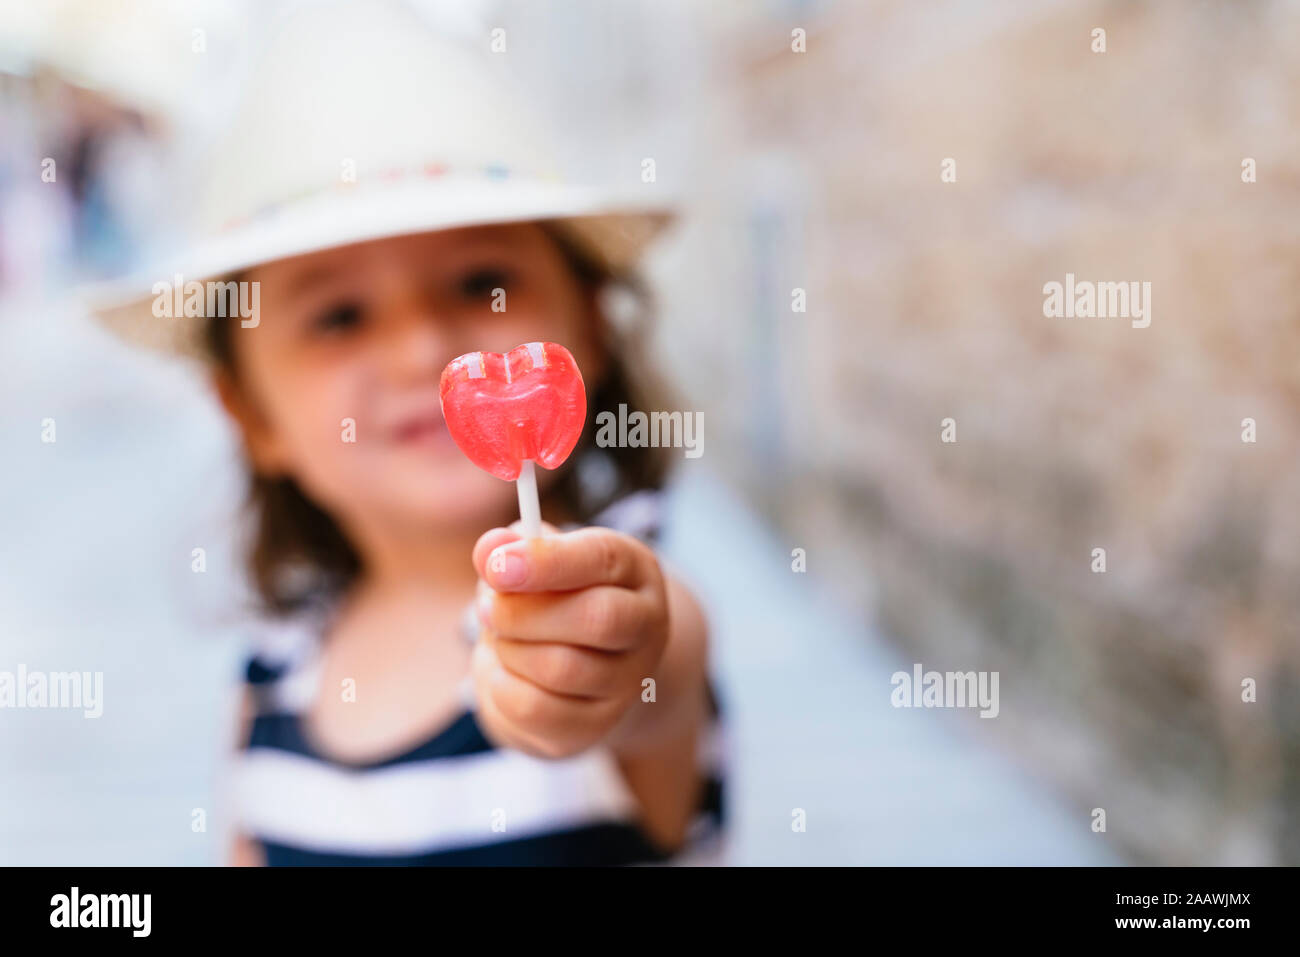 Poco la mano della bambina tenendo a forma di cuore lecca-lecca, close-up Foto Stock